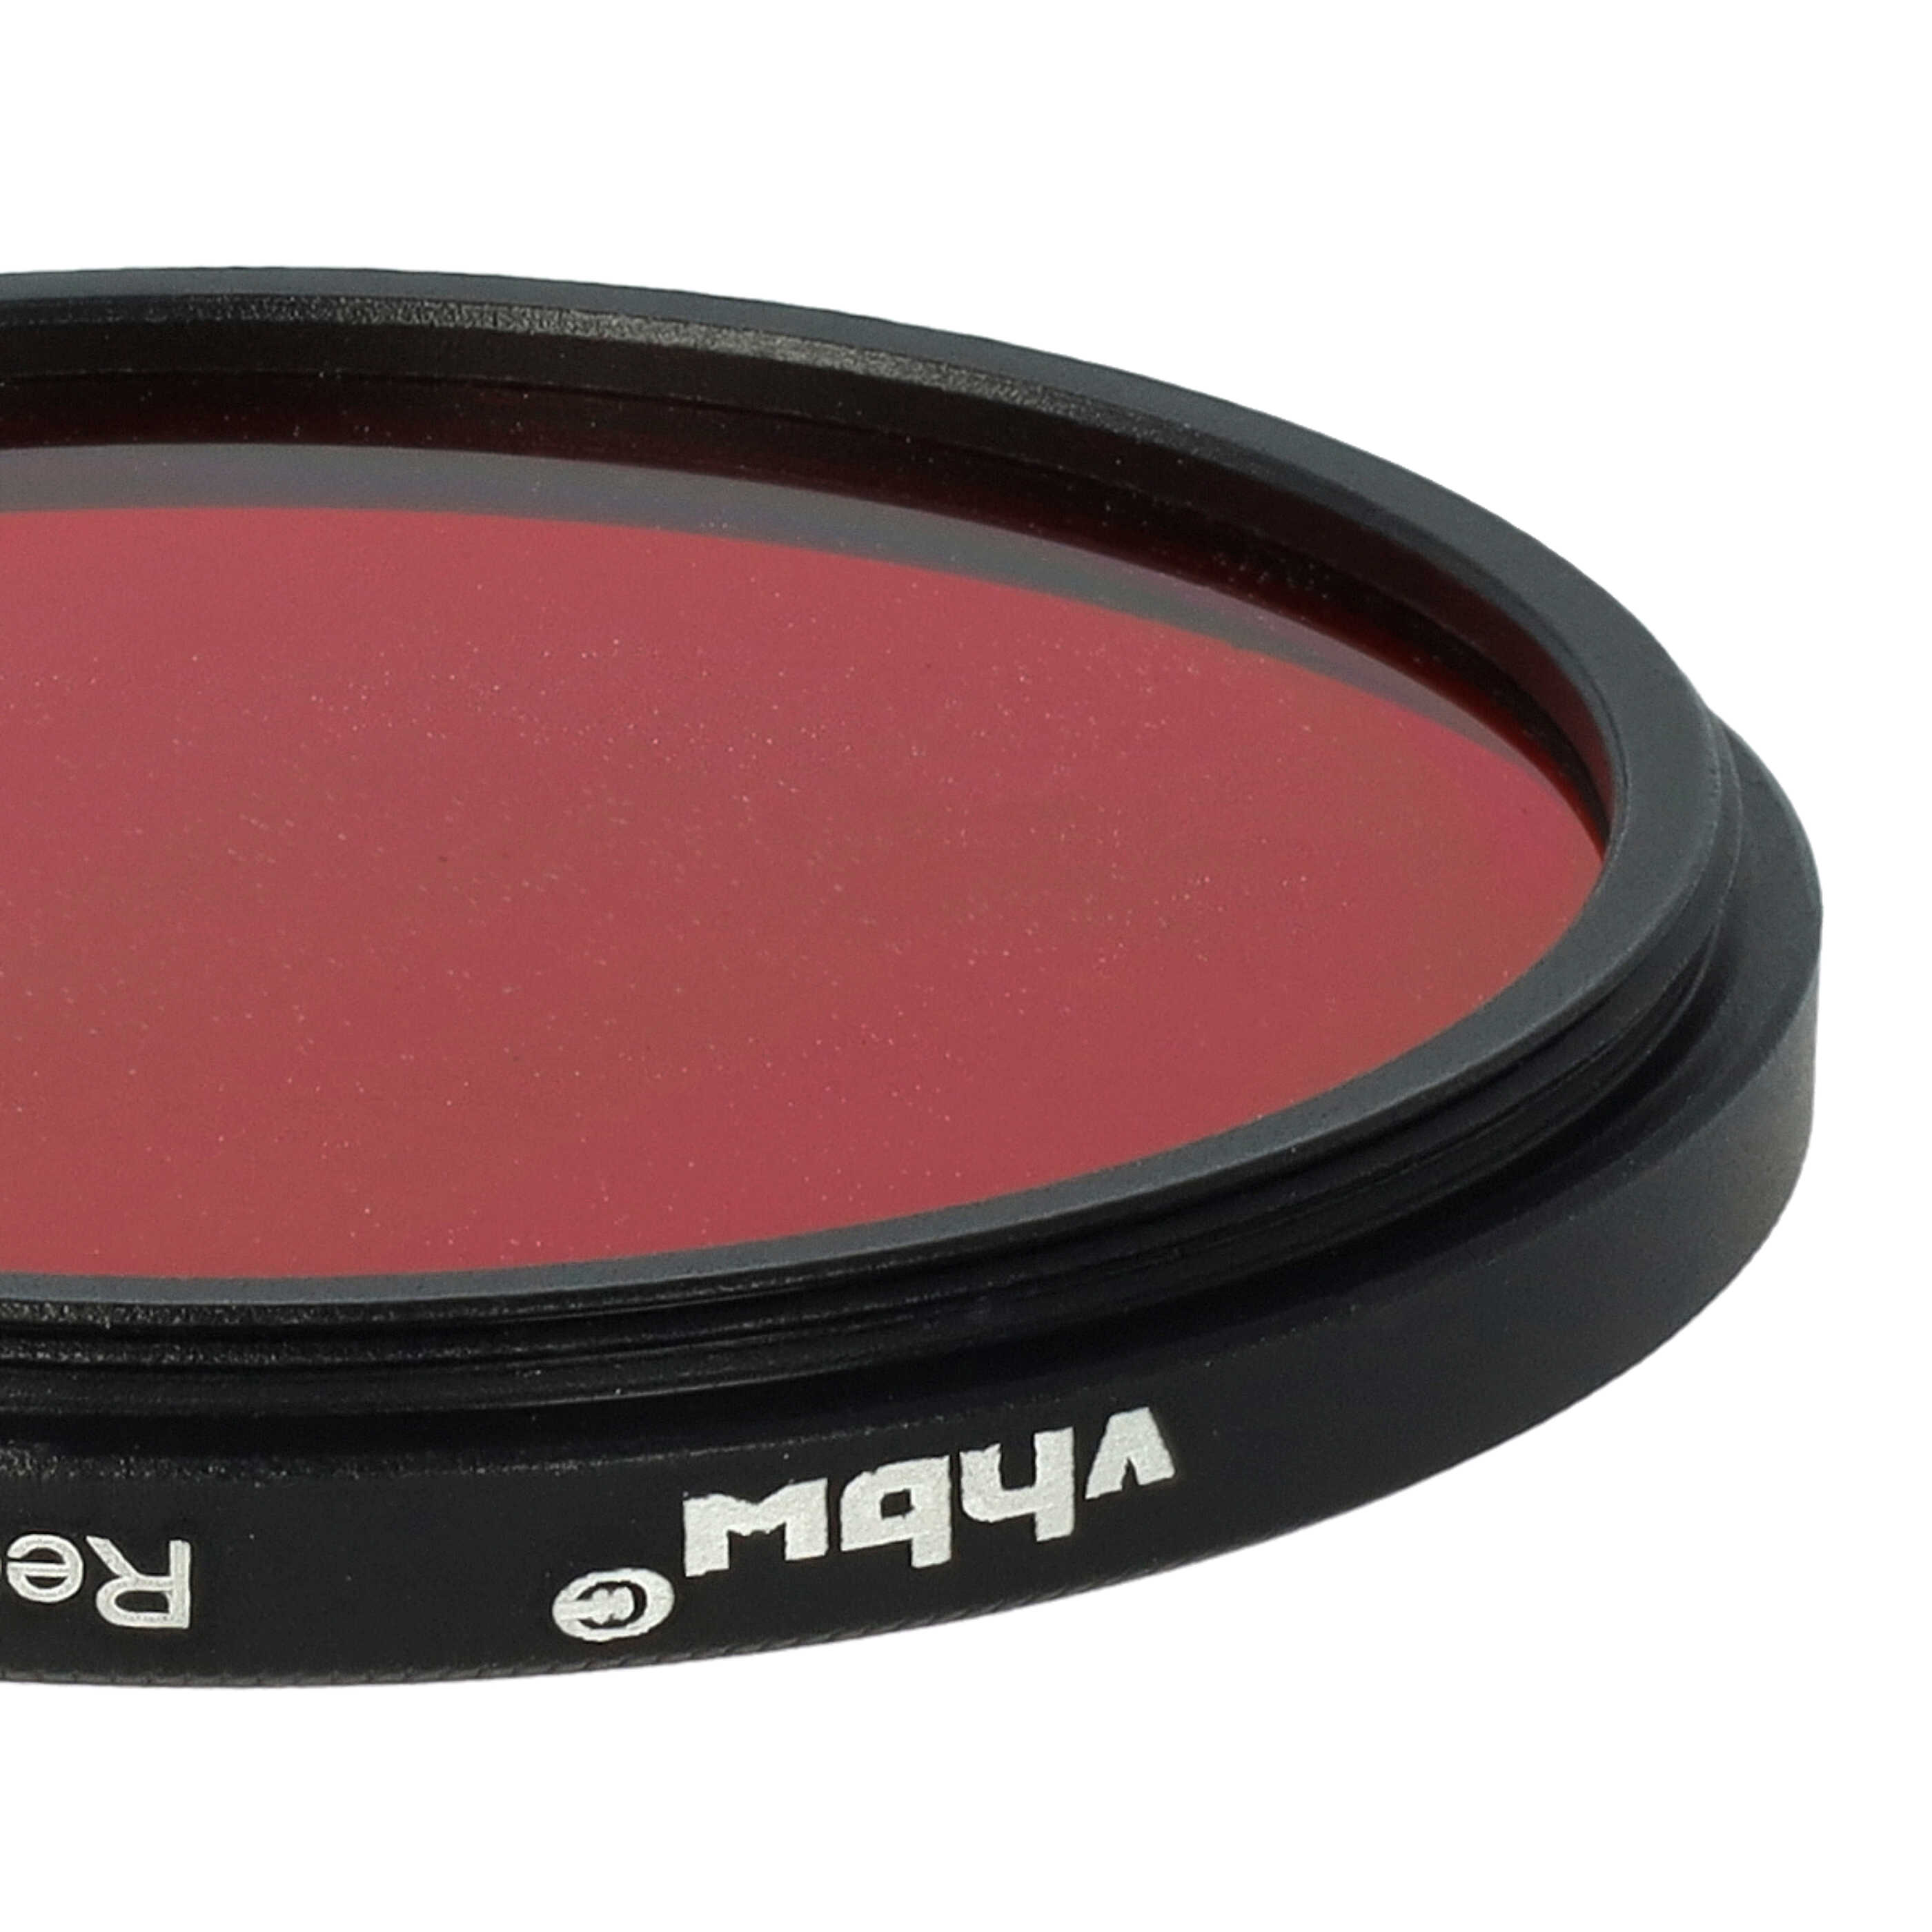 Filtro colorato per obiettivi fotocamera con filettatura da 52 mm - filtro rosso